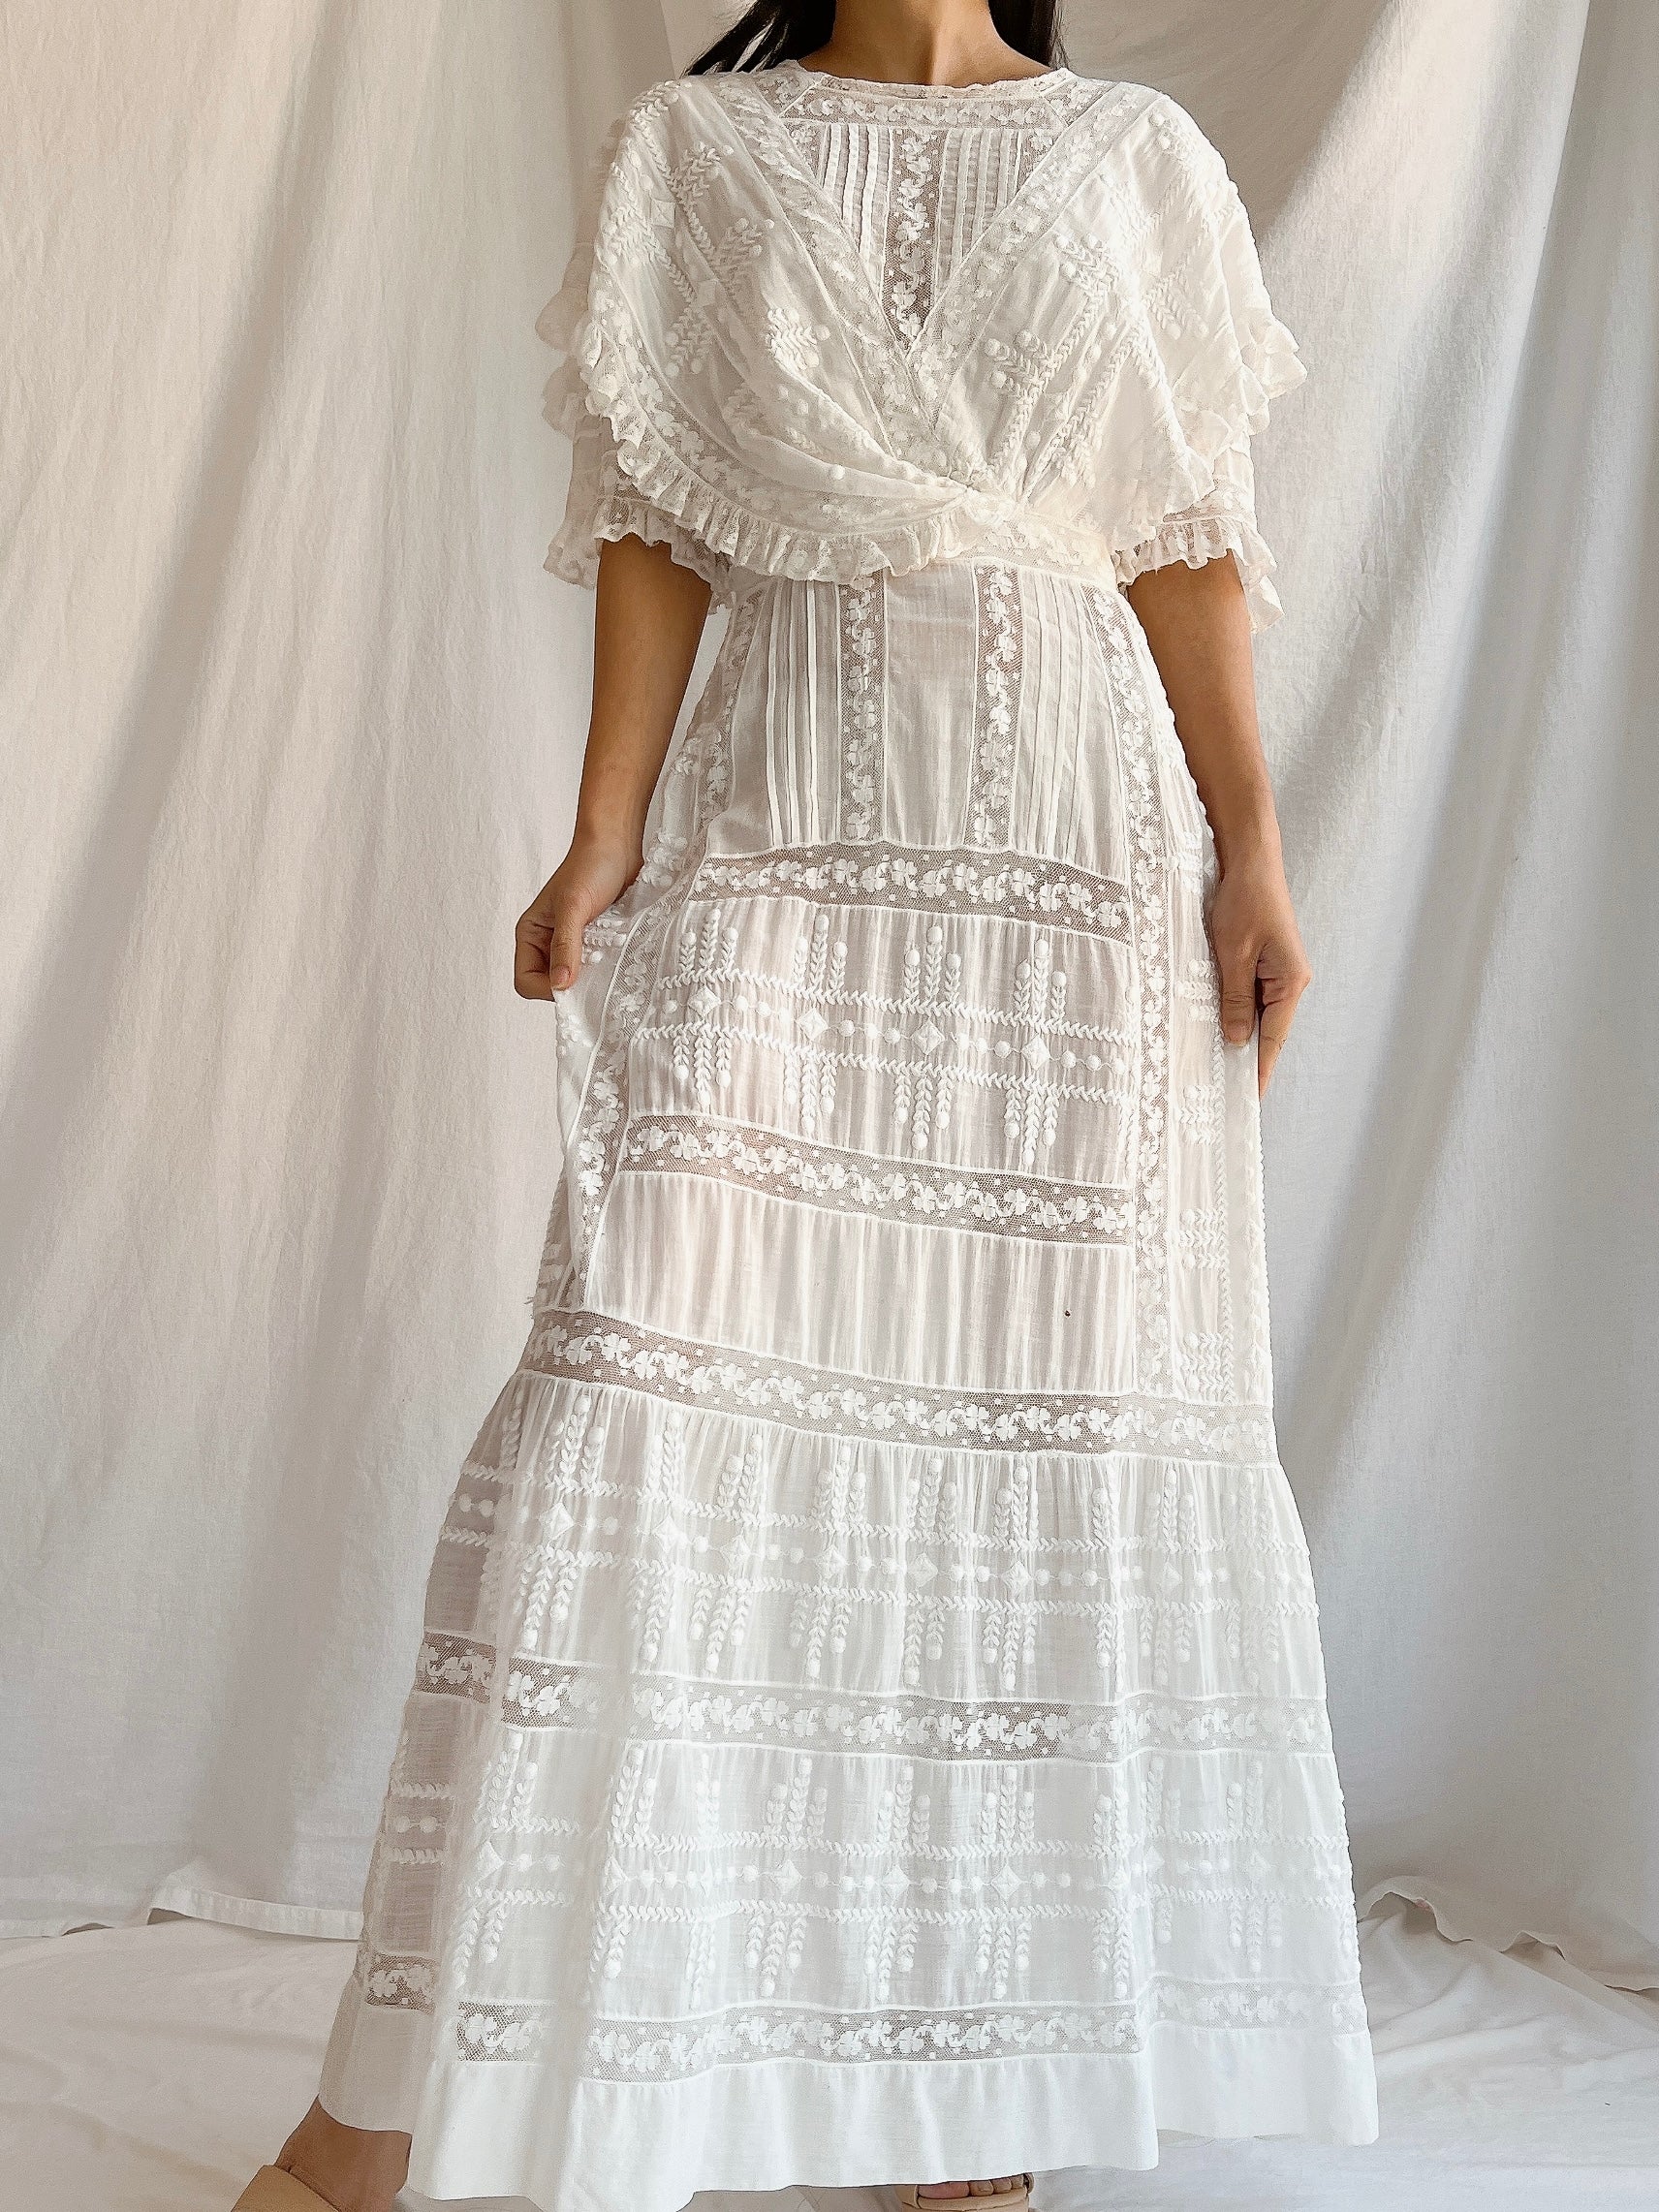 Edwardian Cotton Draped Bodice Lawn Dress - XS